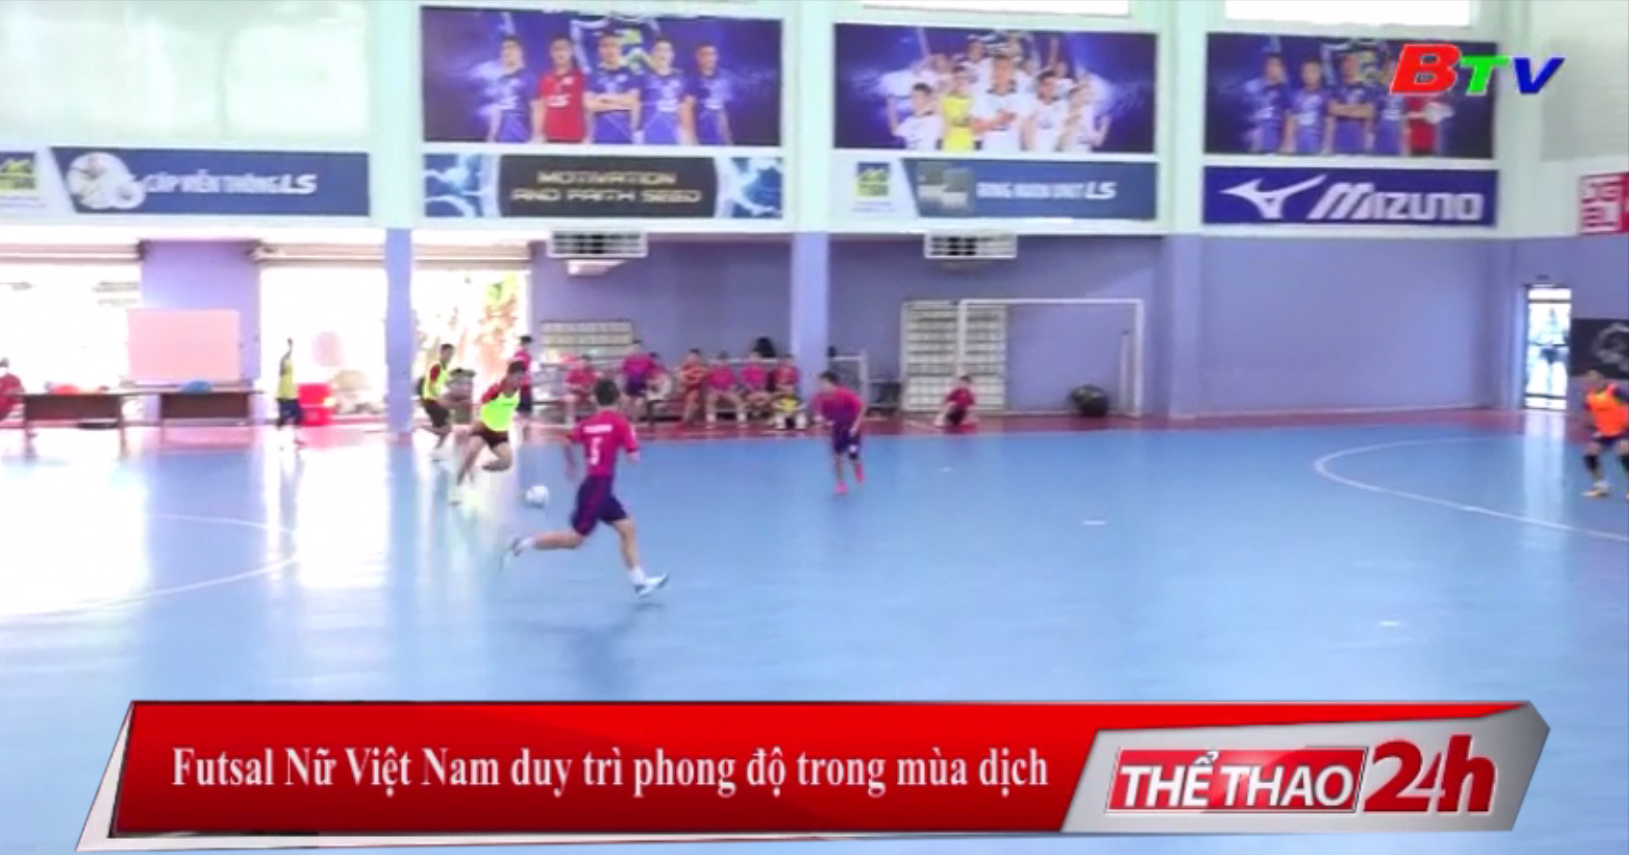 Futsal nữ Việt Nam duy trì phong độ trong mùa dịch